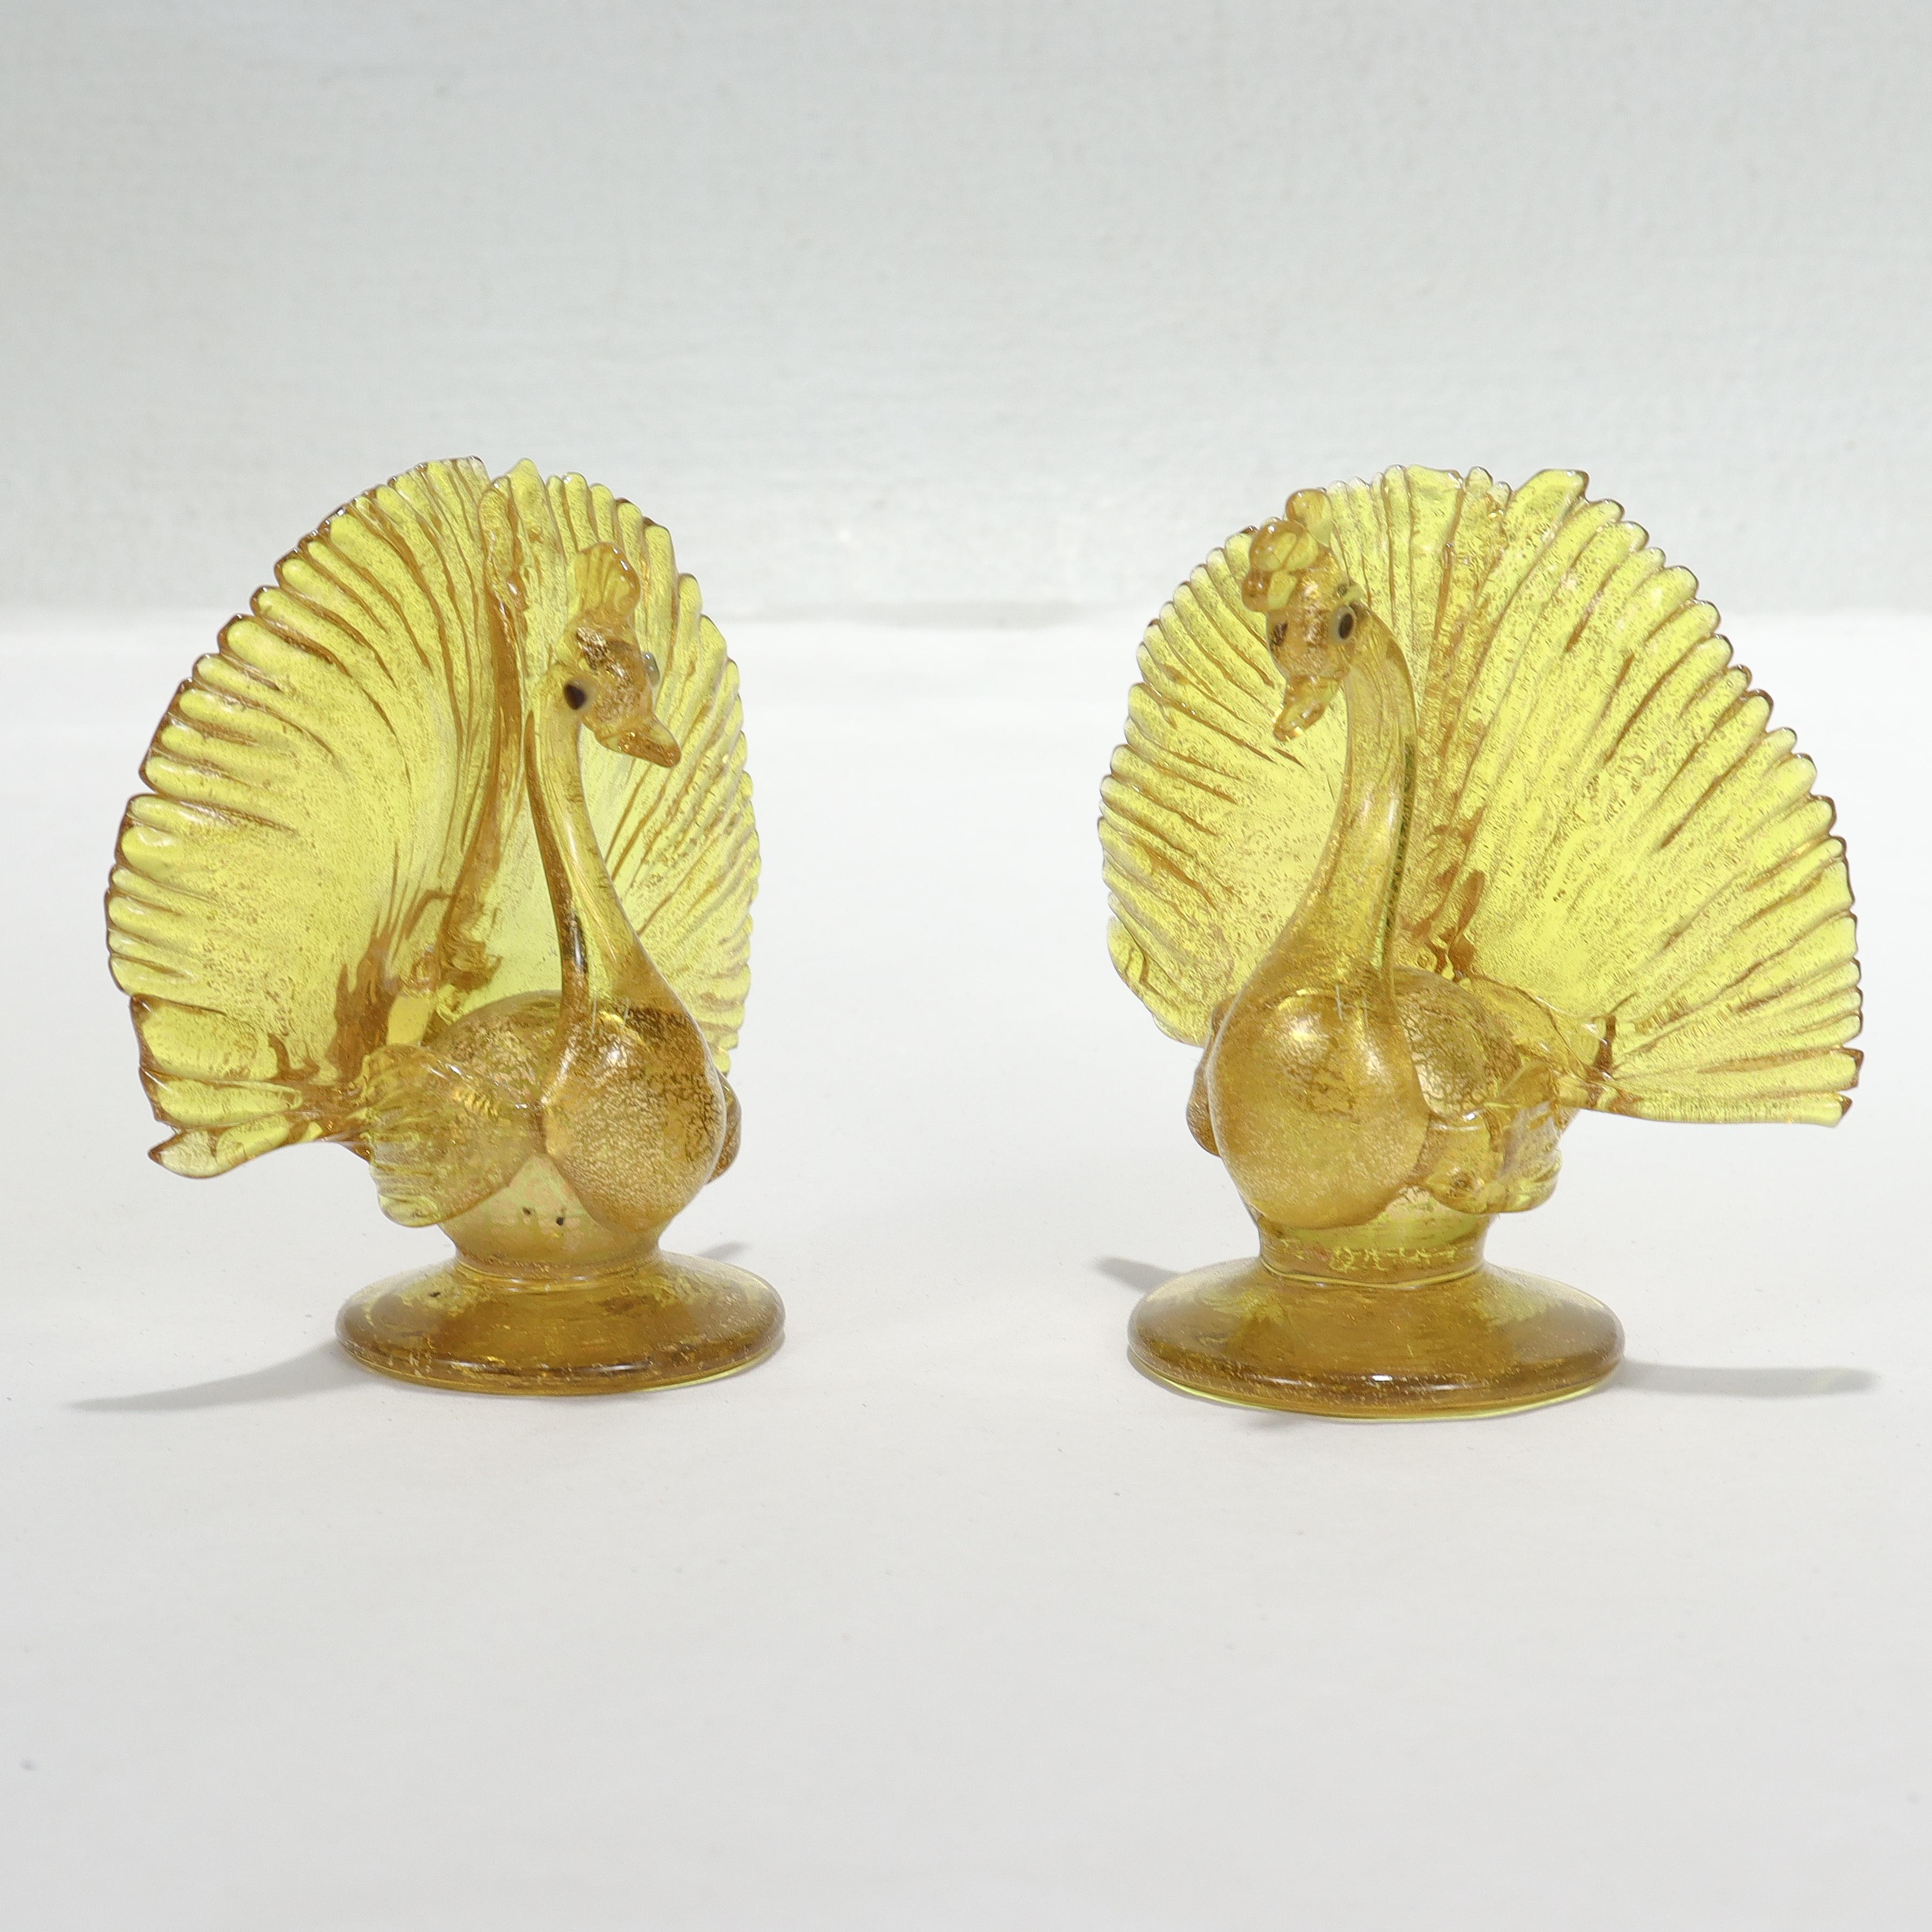 Une belle paire de figurines ou de porte-cartes en verre de Venise ou de Murano.

En forme de paons en verre jaune avec feuille d'or avec des yeux bleu foncé.

Attribué à Salviati.

Tout simplement une magnifique paire de paons en verre vénitien ou